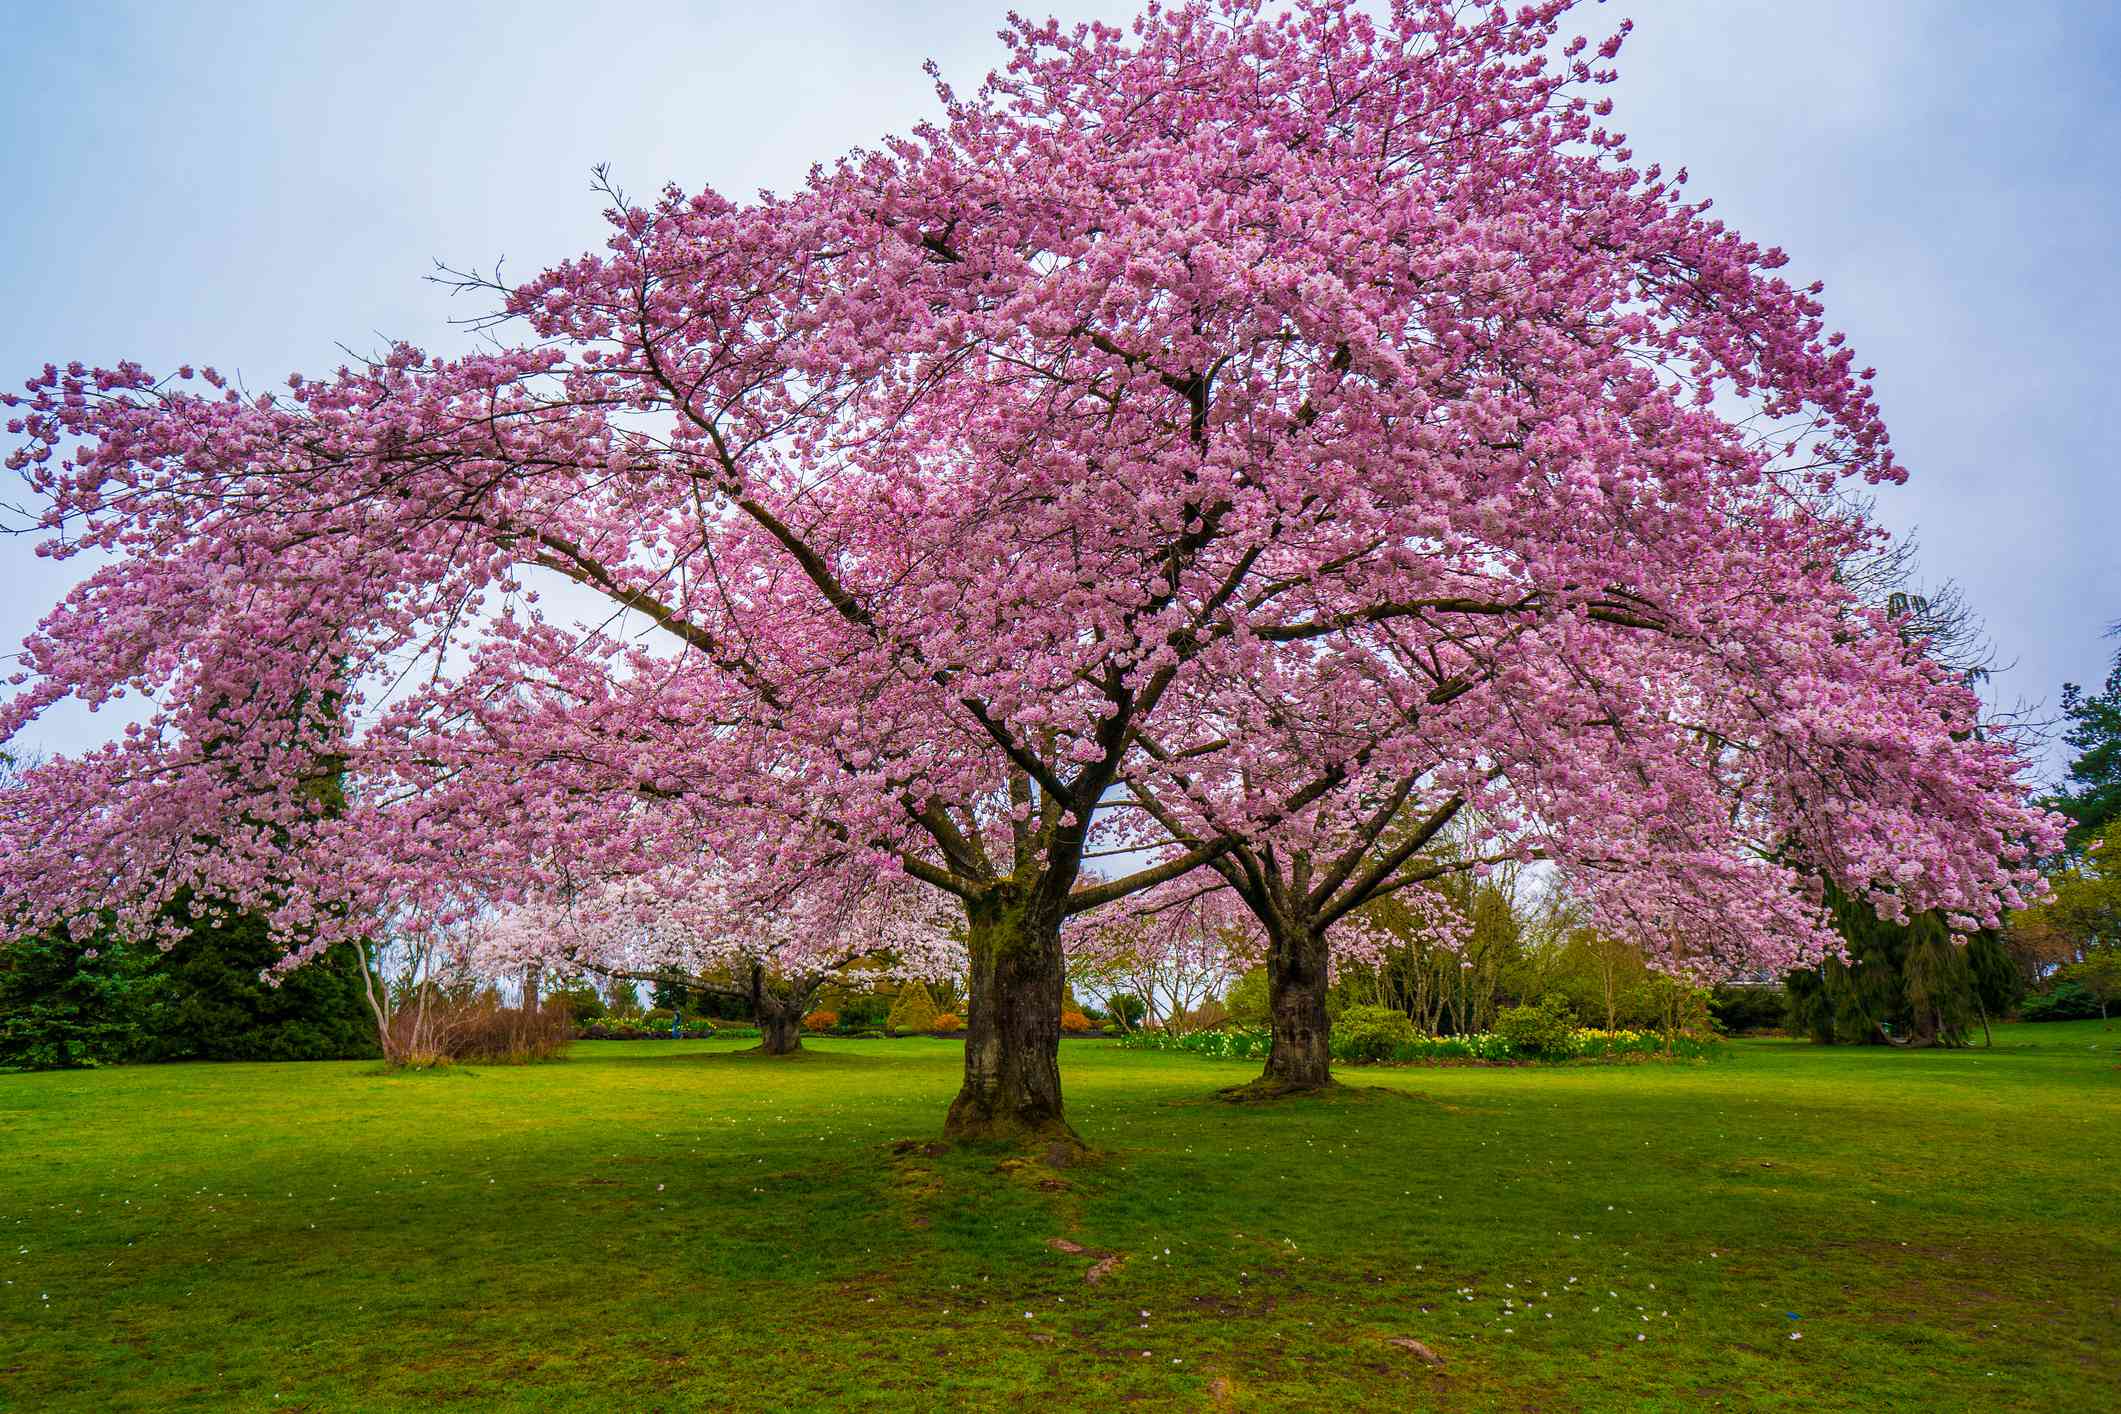 Grandes cerezos en flor de color rosa intenso en un amplio césped del Parque Elizabeth, en Vancouver, bajo un cielo azul